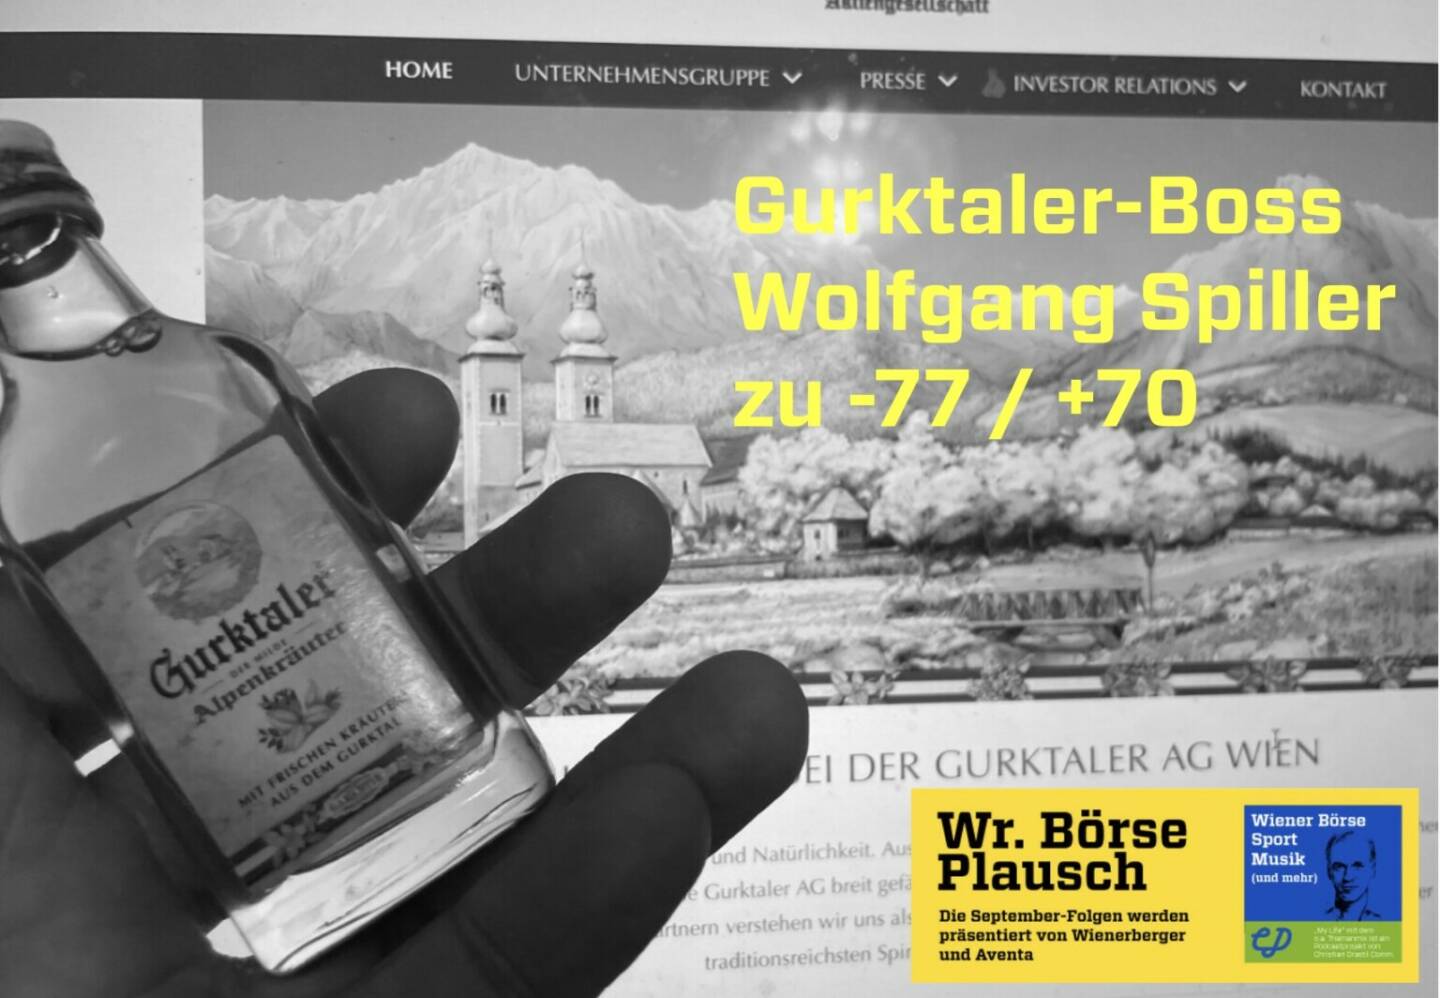 Gurktaler-Boss Wolfgang Spiller zu -77 / +70. Dies und mehr in Folge S3/40 der Wiener Börse Pläusche im Rahmen von http://www.christian-drastil.com/podcast . 